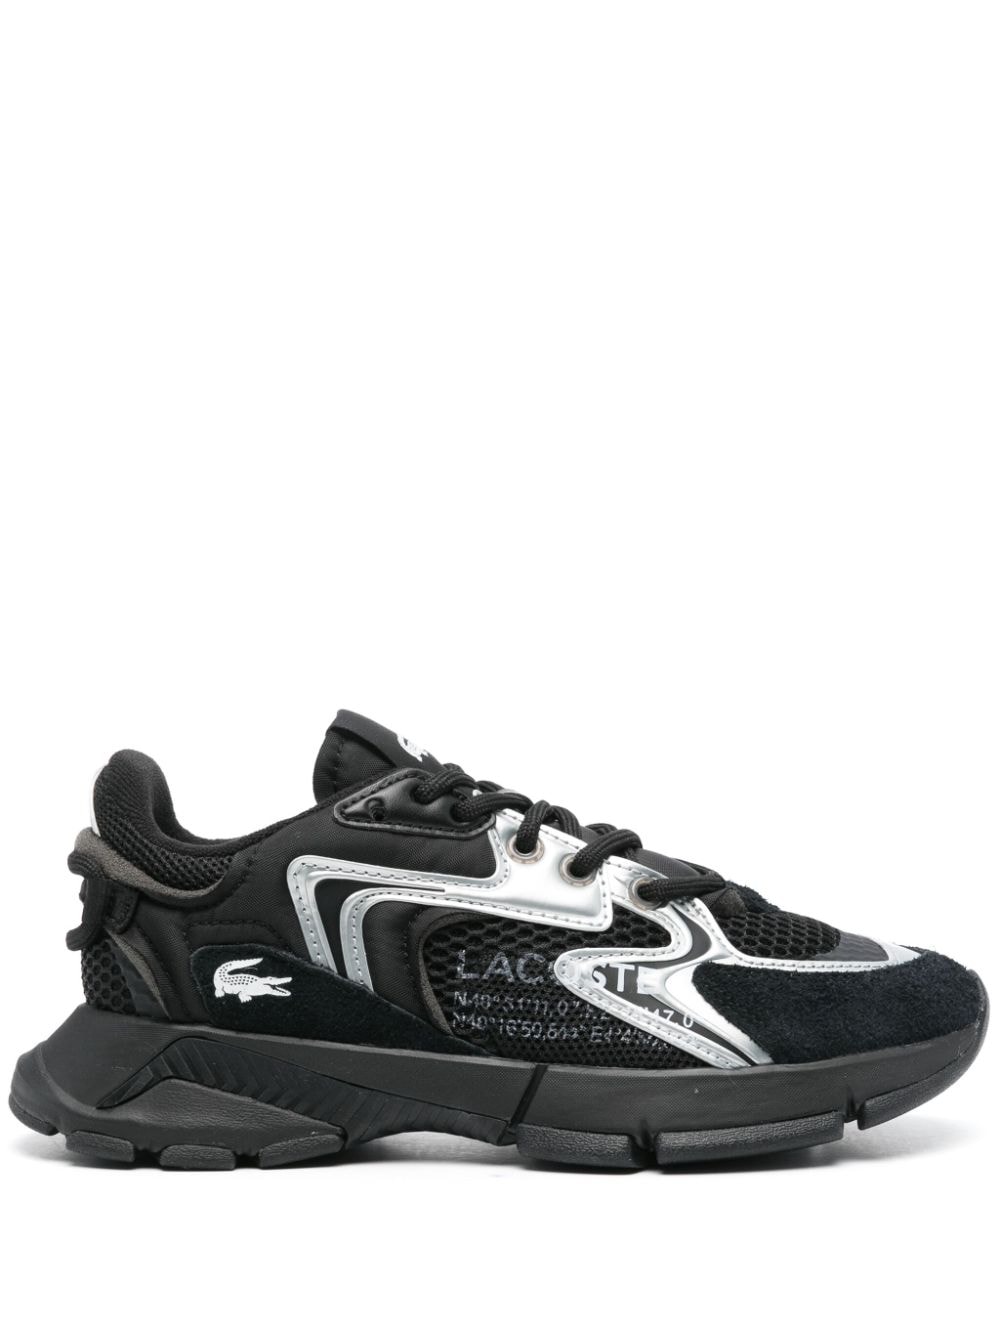 Lacoste L003 Neo sneakers - Black von Lacoste